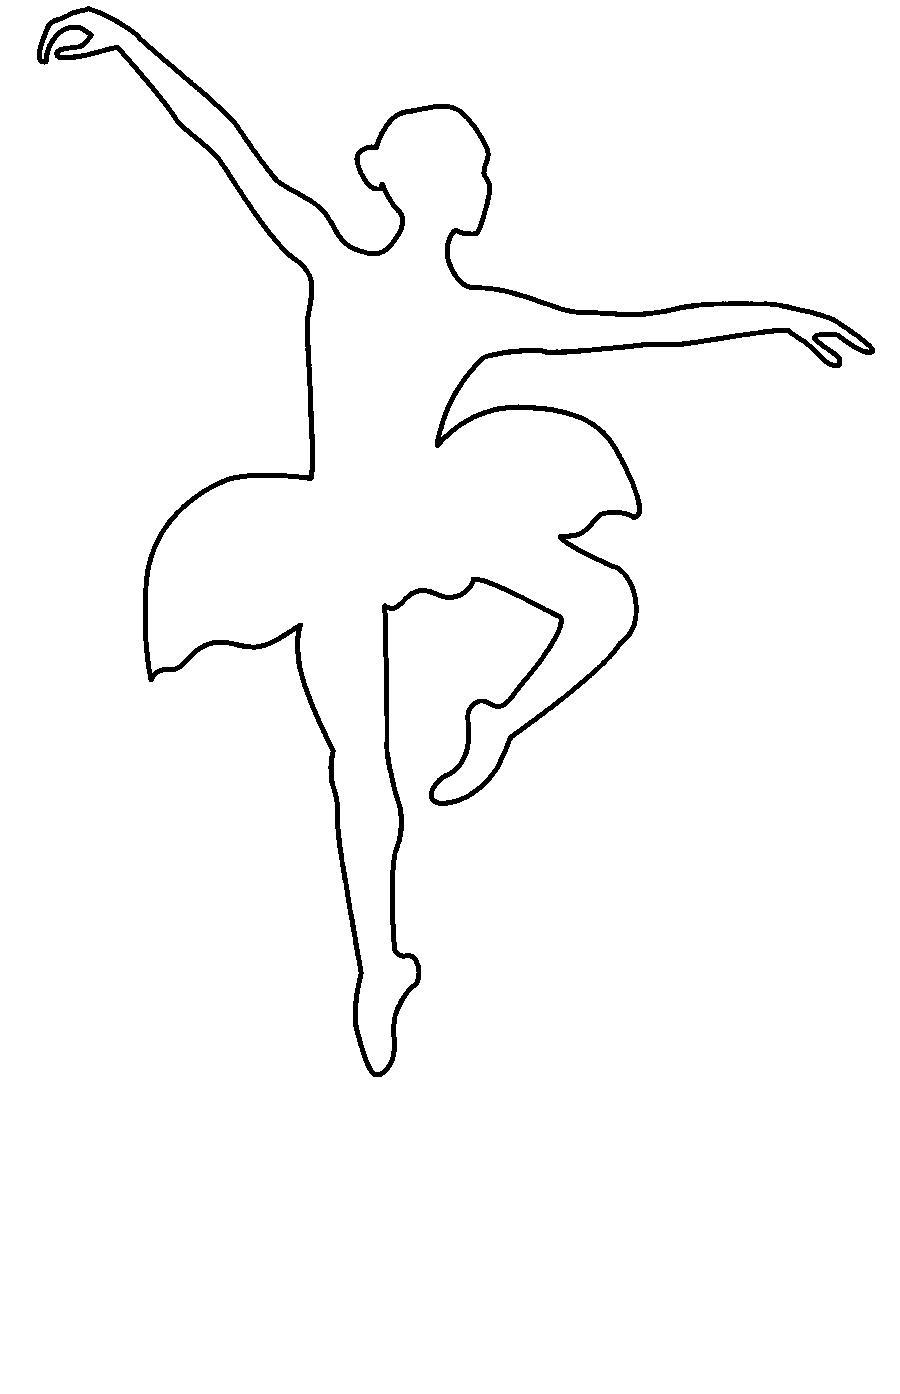 Поделки своими руками шаблоны для вырезания. Балерина танцует контур Сайт поделок